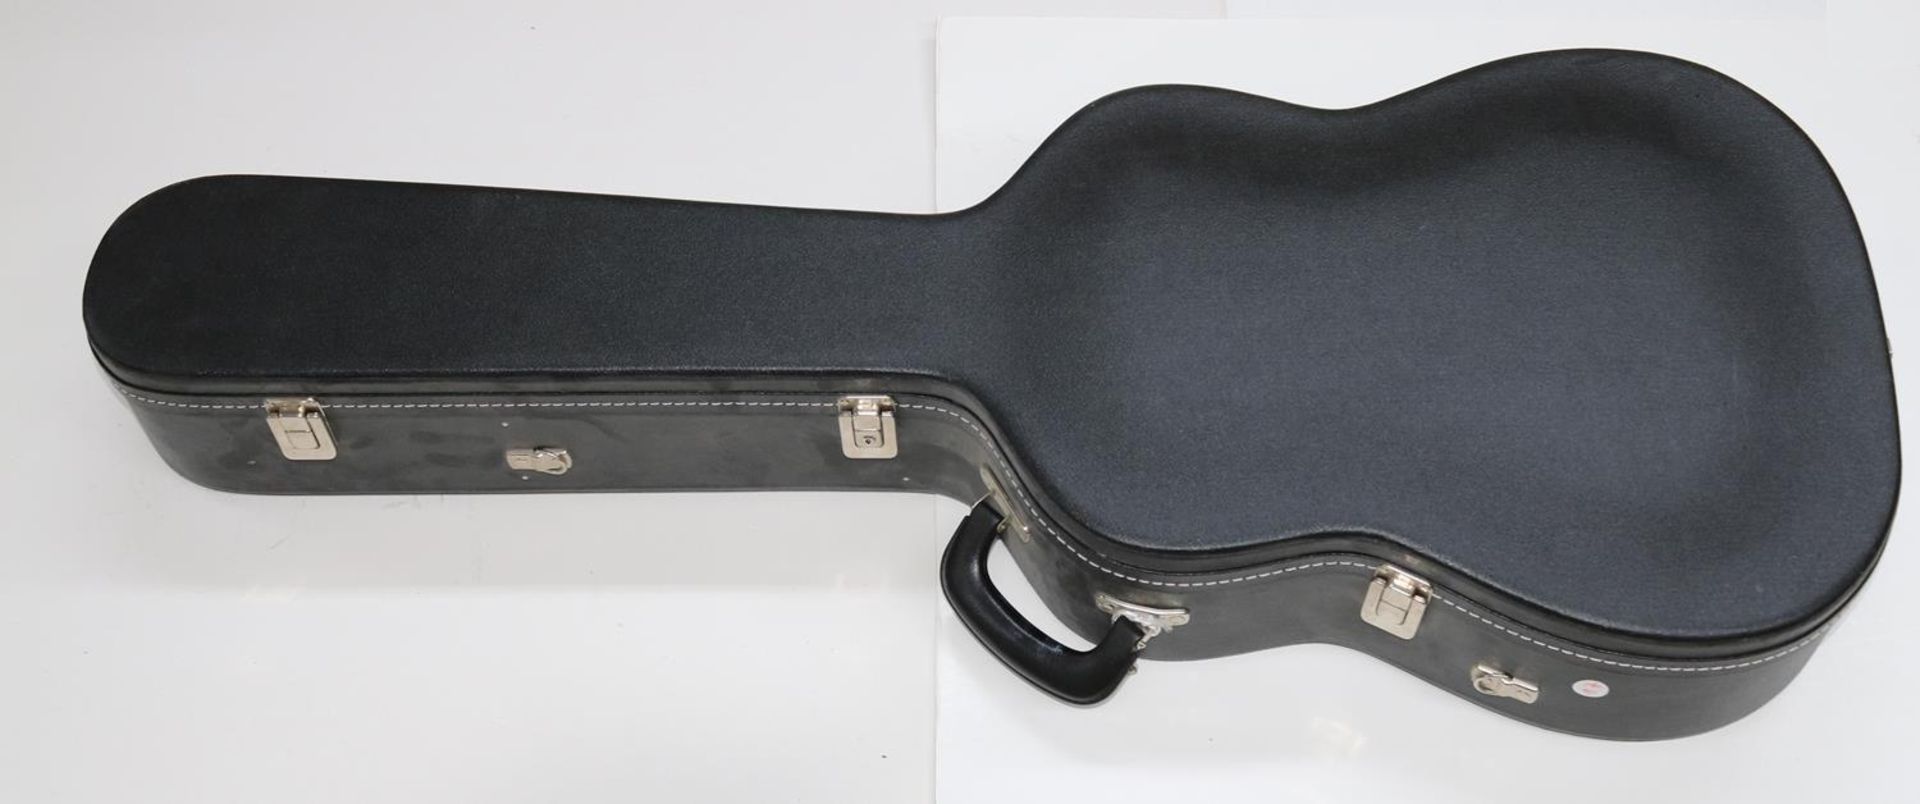 Gottschall, PeterFunnelbody Western Guitar Model FB 14/B. Seriennummer 50. Bj. 2006. Near mint - Image 4 of 4